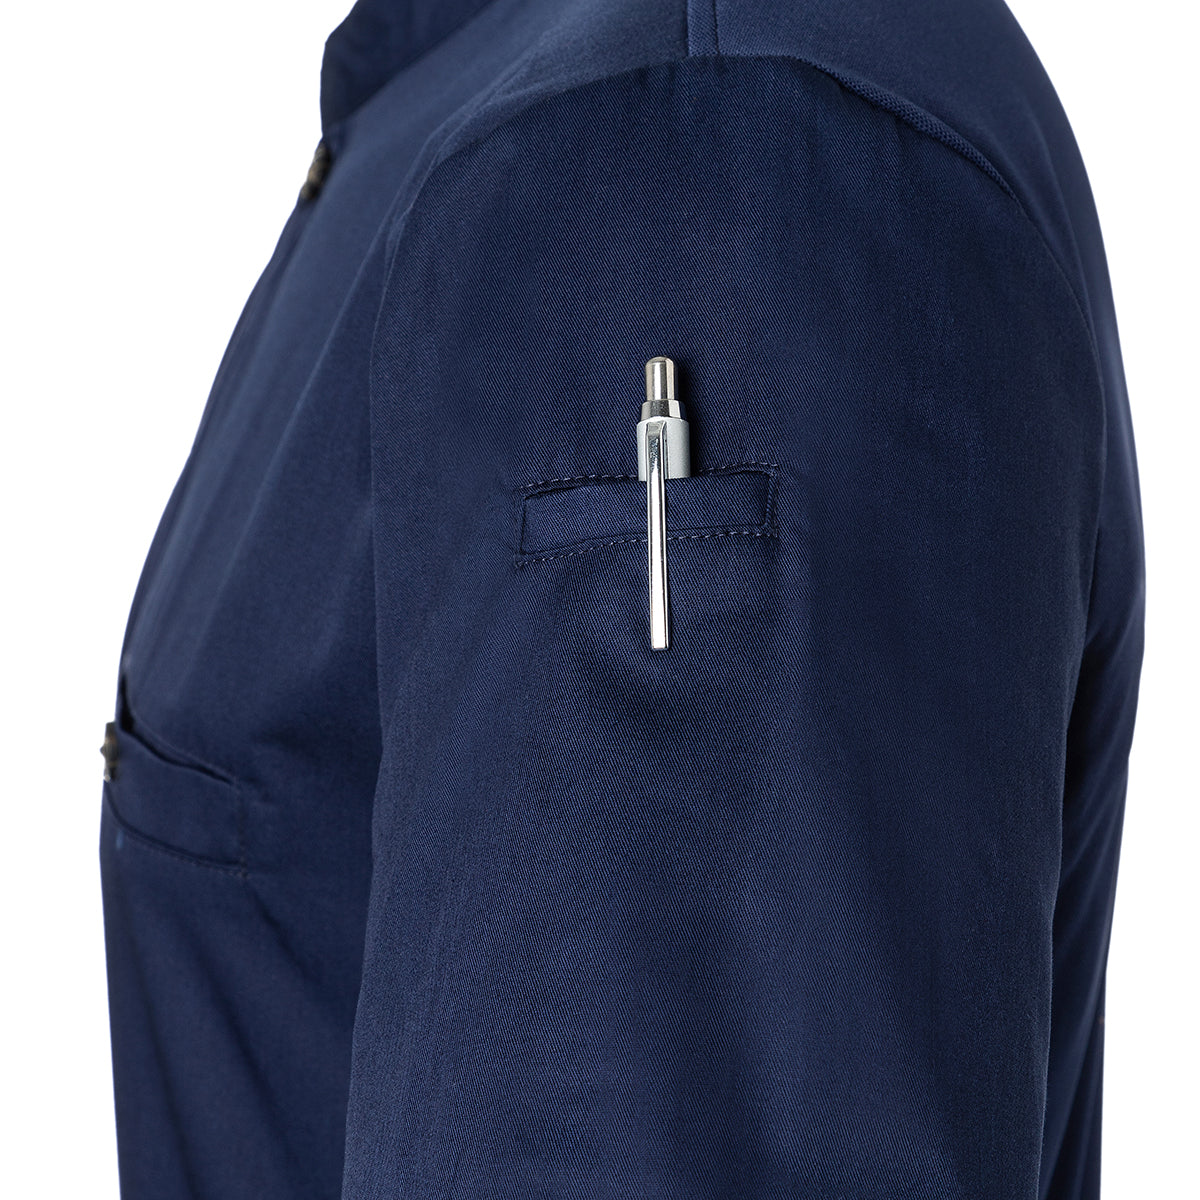 (6 stk) Karlowsky - Kortærmet arbejdsskjorte til herrer Performance - Marineblå - Størrelse: 2XL